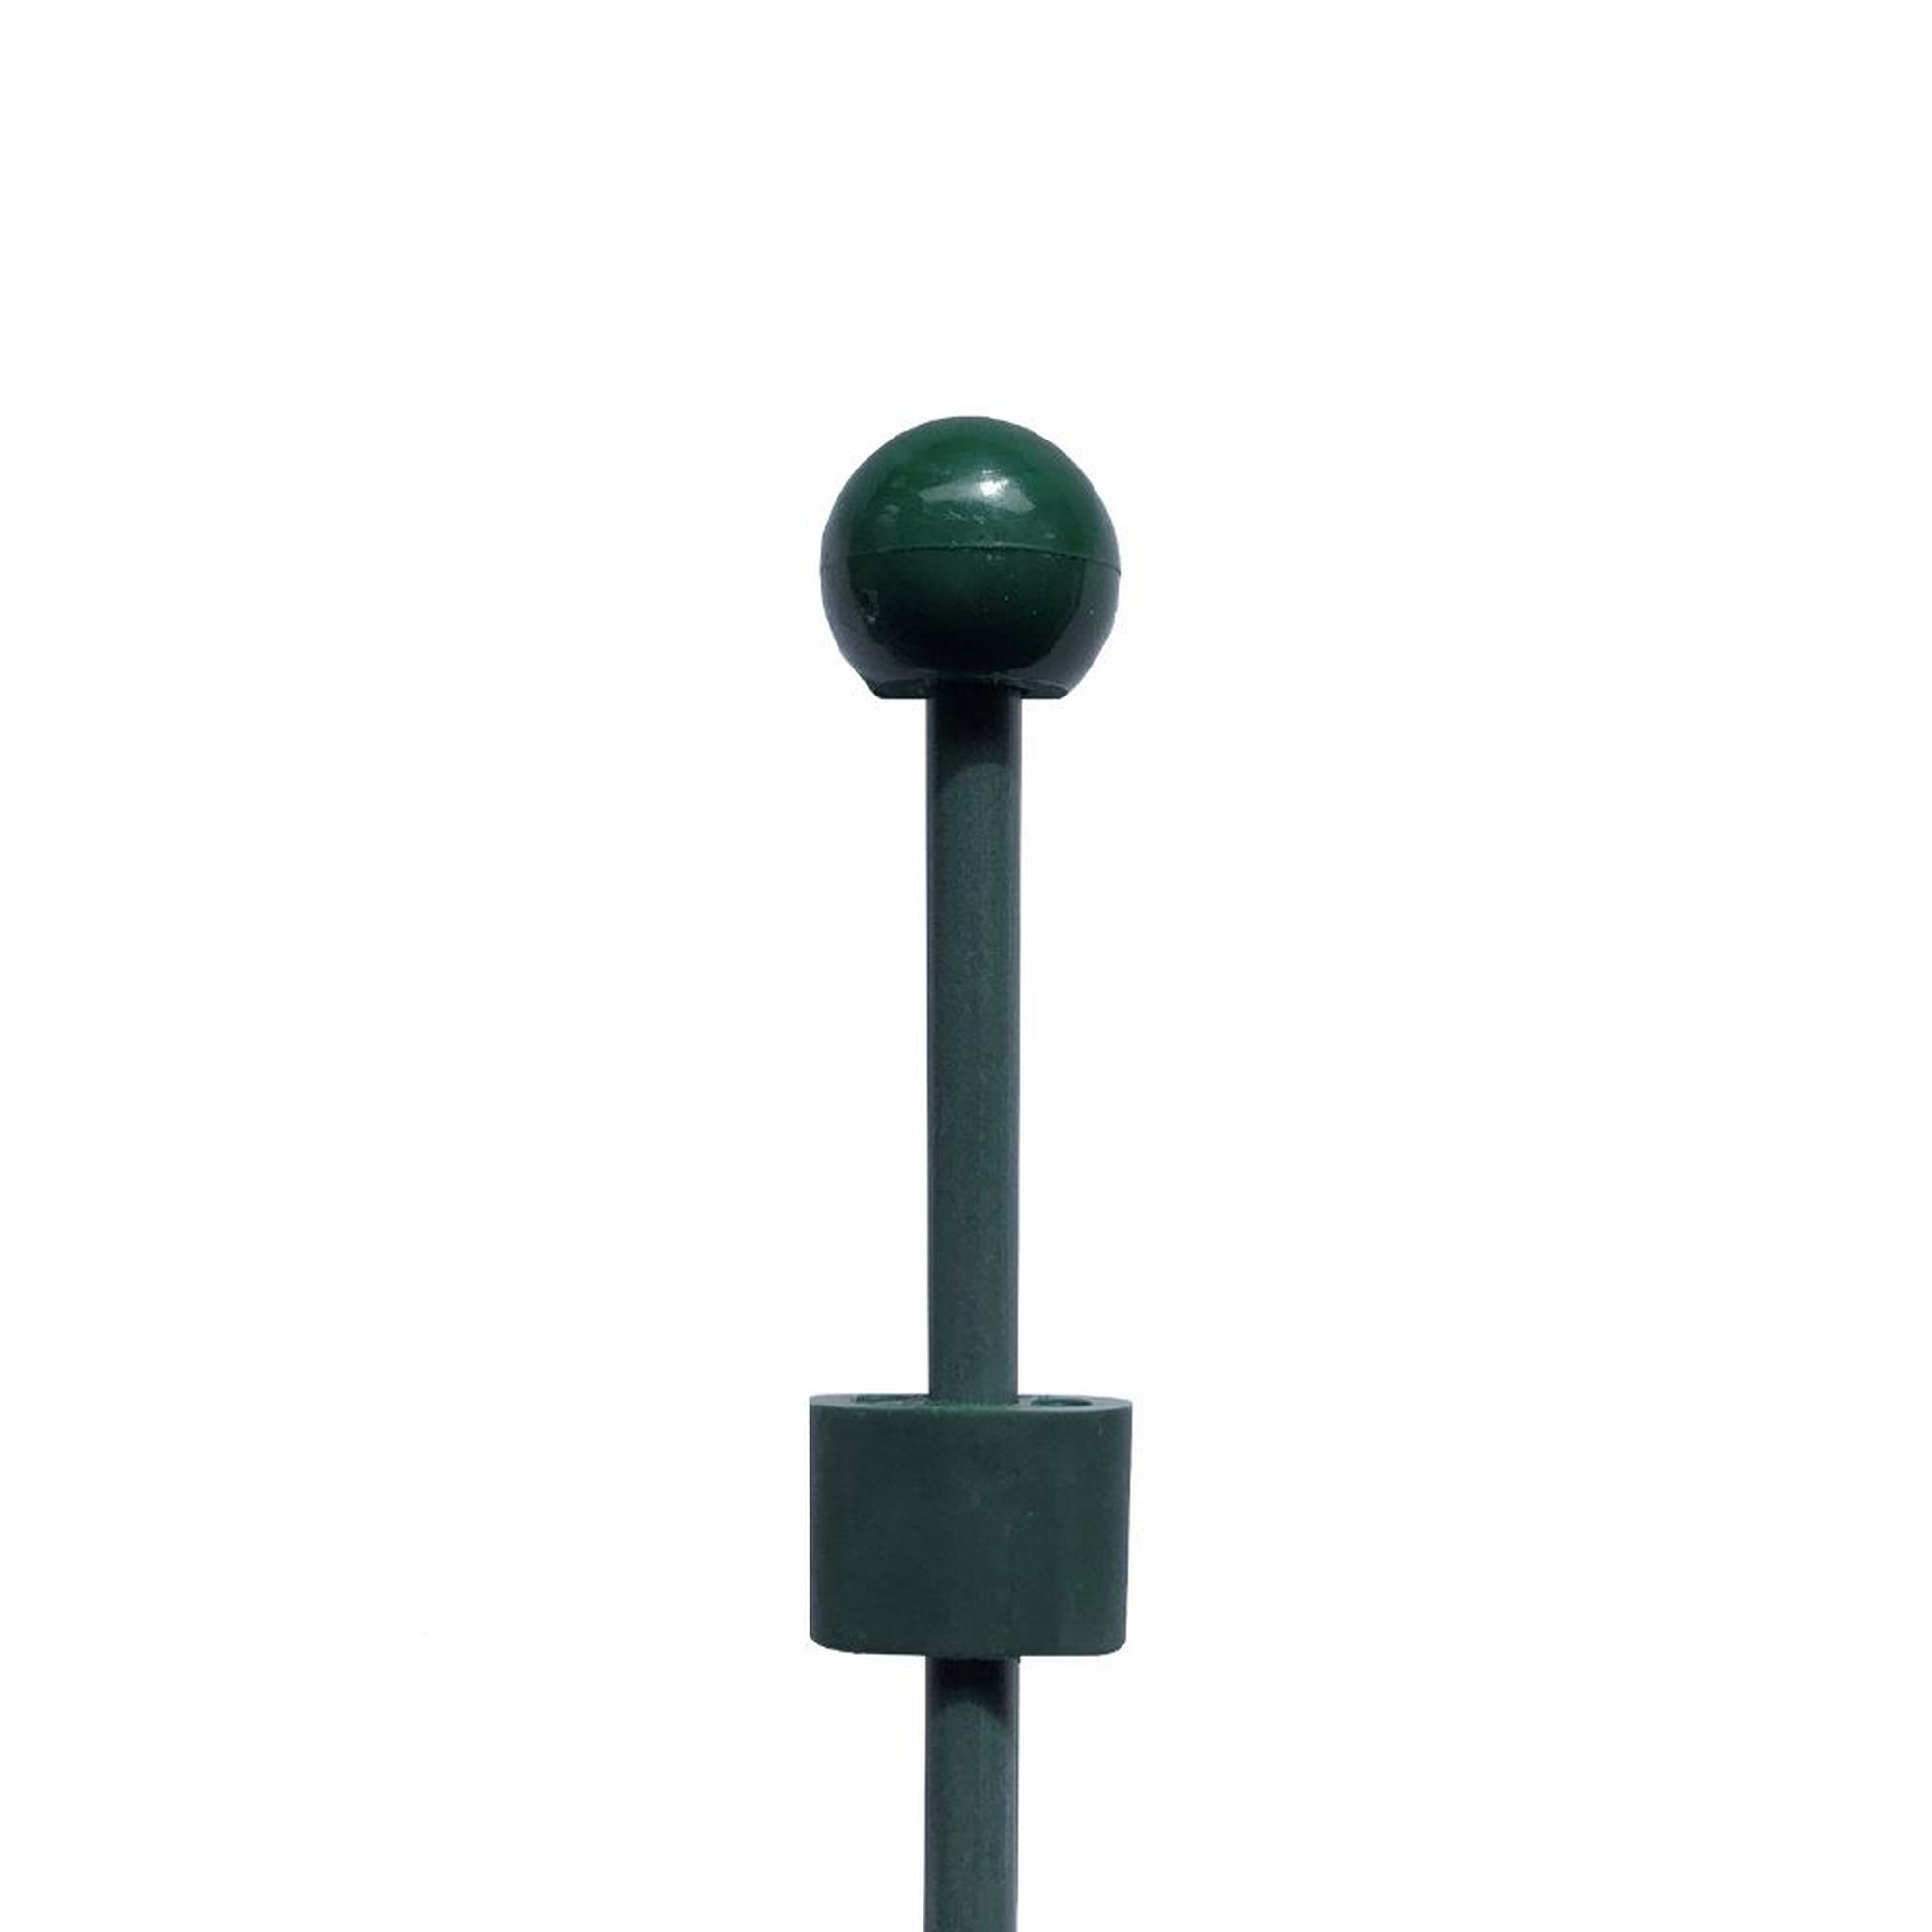 Pinnup-Bodenstab mit Kupplung Glasfiber grün Ø 0,8 x 125 cm + product picture